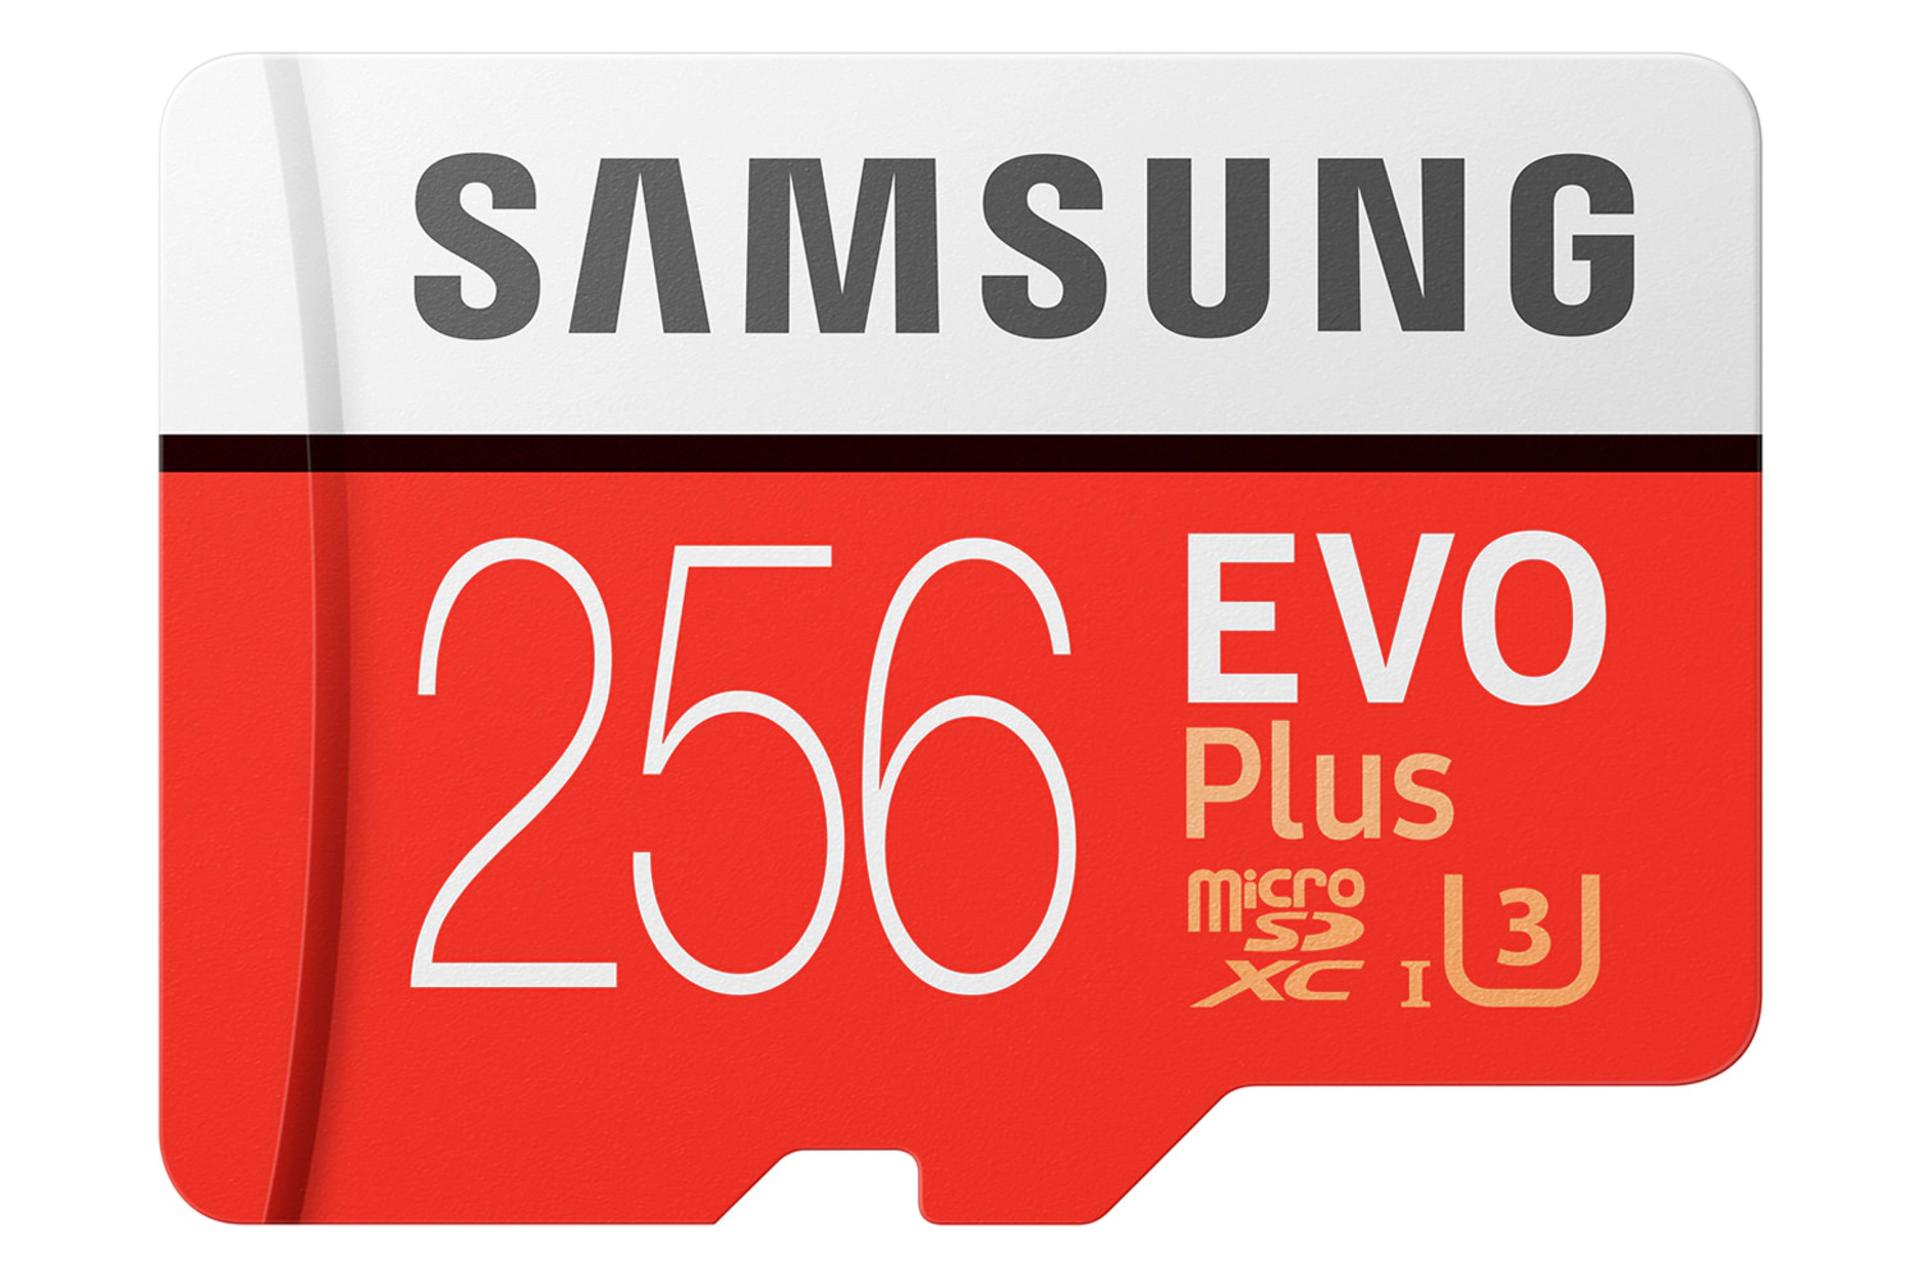 مرجع متخصصين ايران مموري كارت سامسونگ microSDXC با ظرفيت 256 گيگابايت مدل Evo Plus كلاس 10